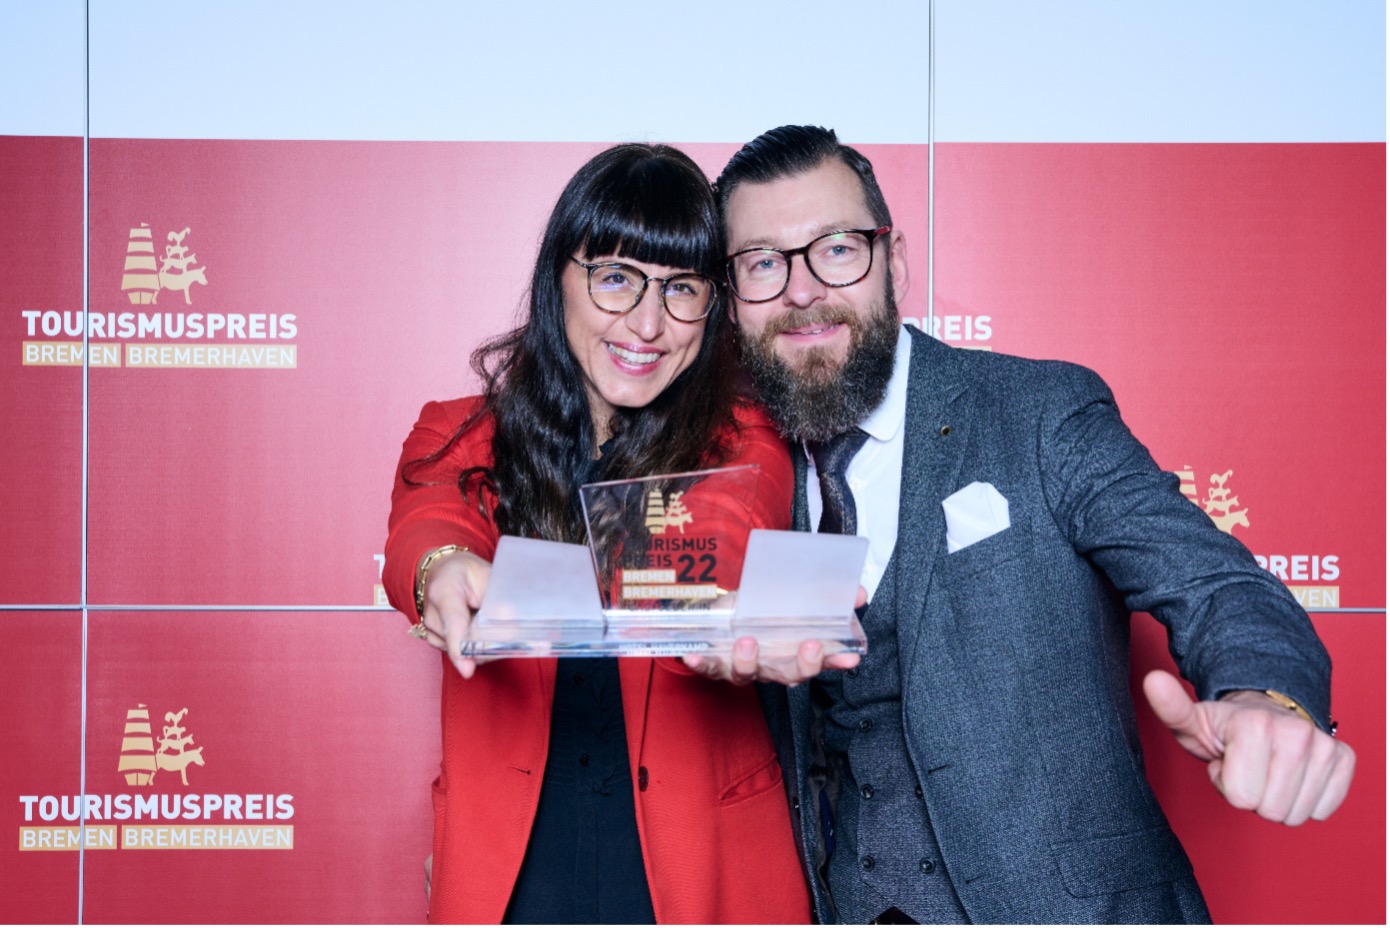 Die zwei Gewinner:innen der Kategorie Gastgeber:in des Jahres Bremerhaven stehen vor einer roten Wand mit Logos des Tourismuspreises 2022